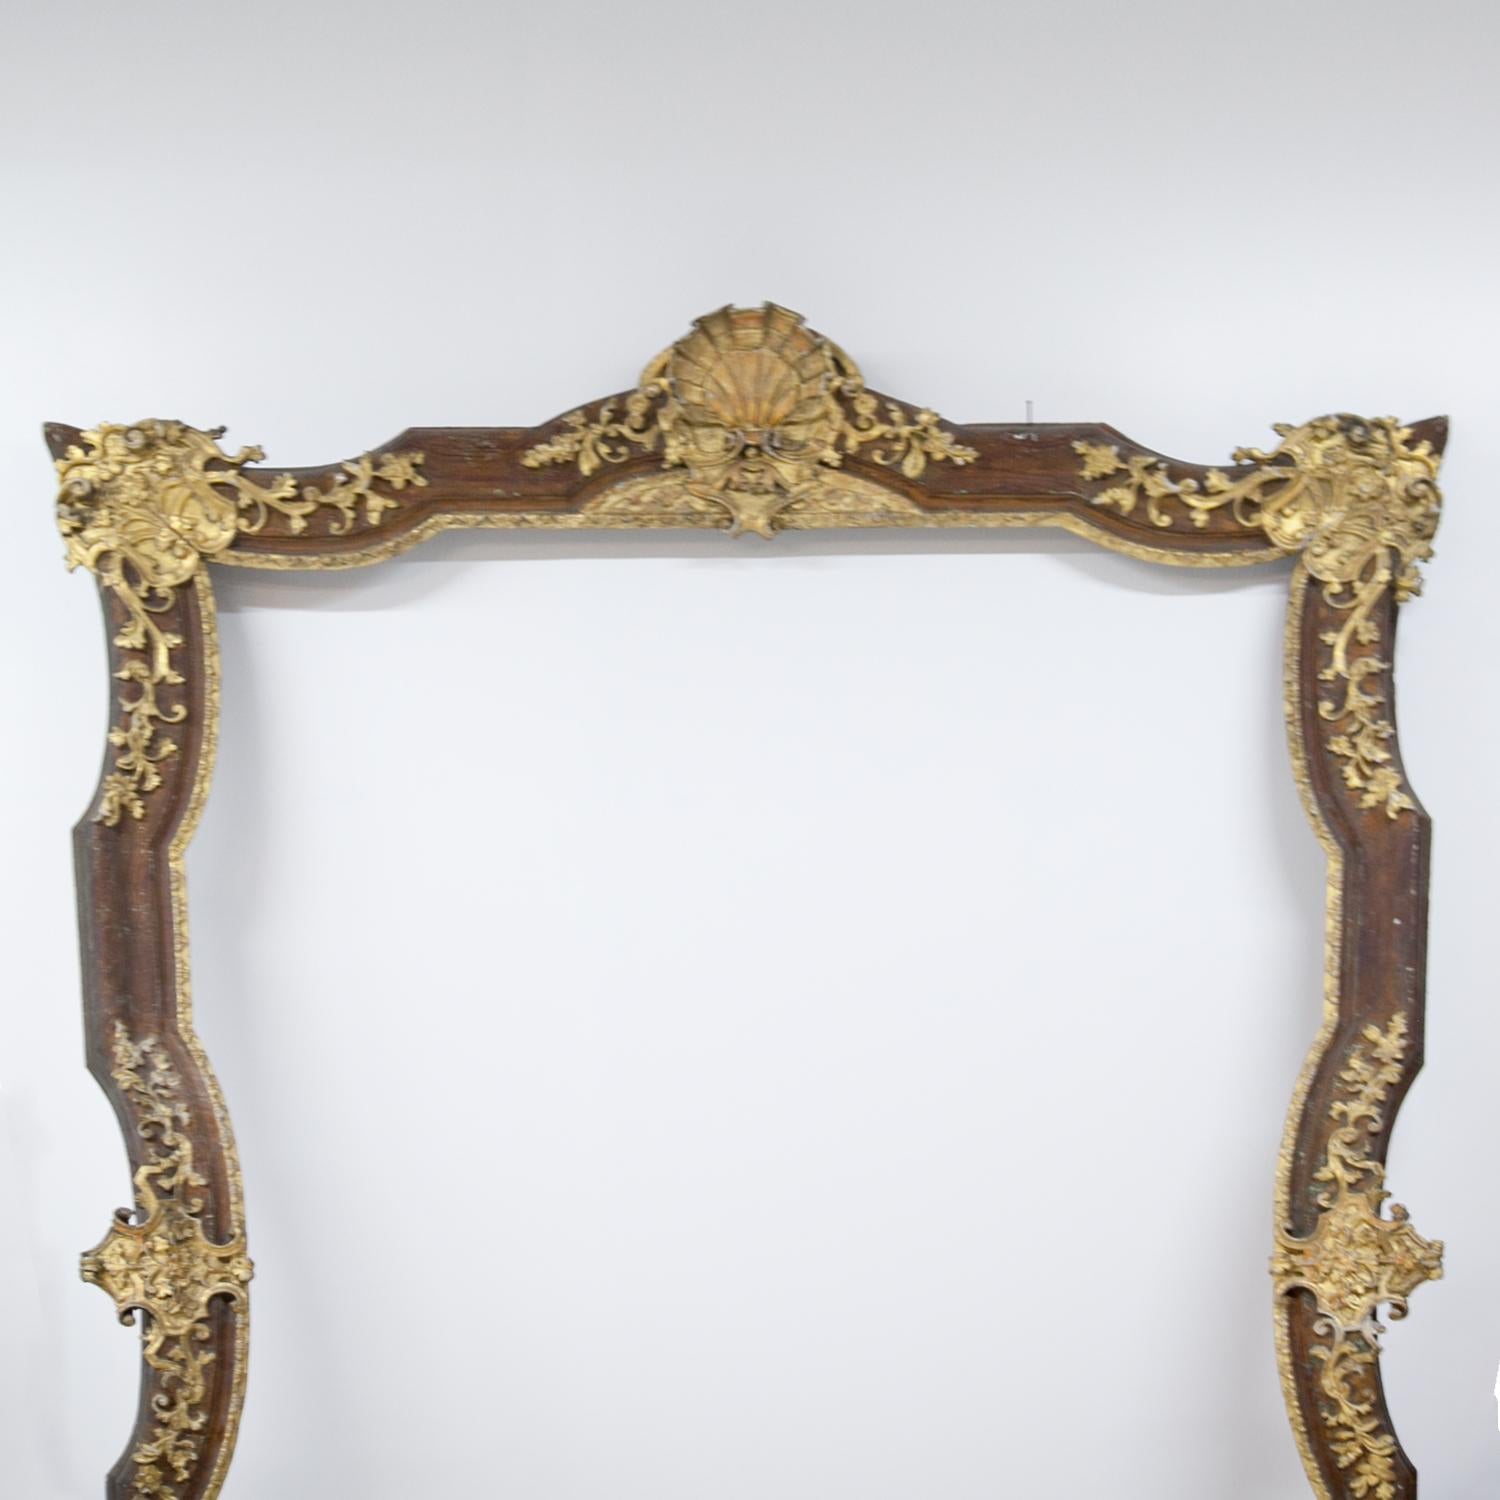 Monumental Baroque Frame, 18th Century (Europäisch)